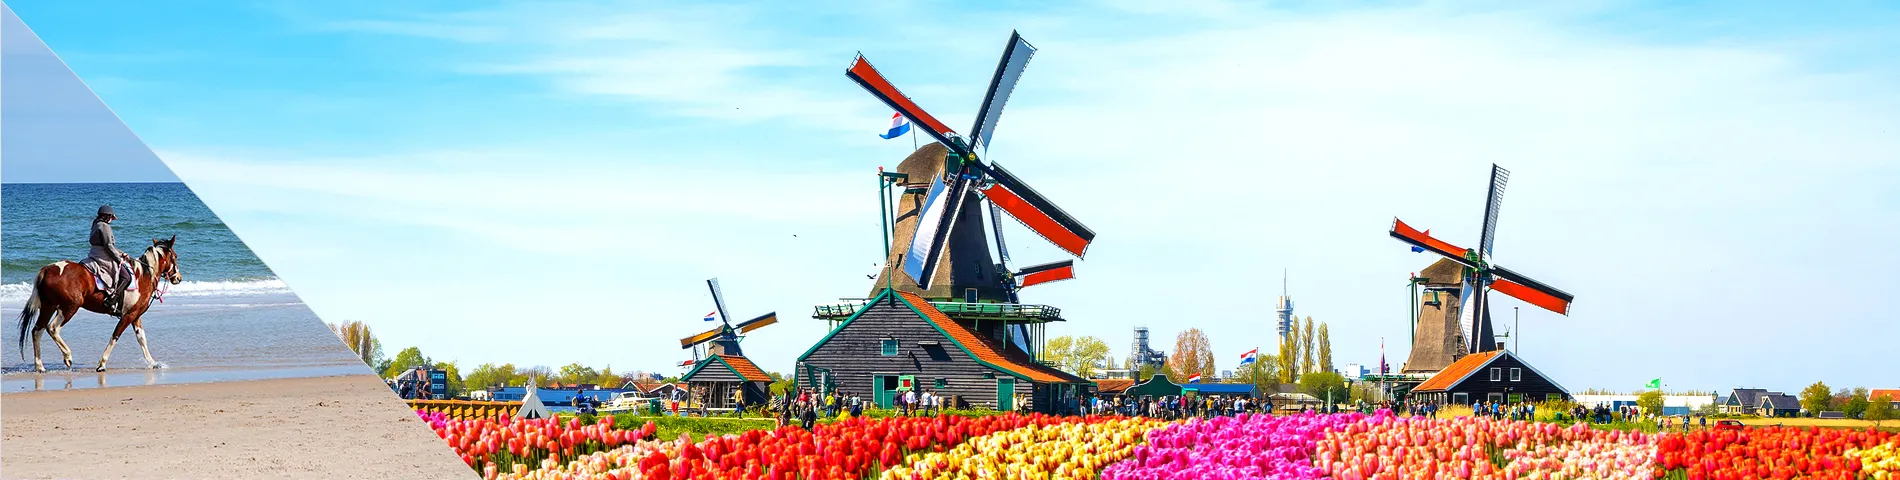 Paesi Bassi - Olandese & Equitazione